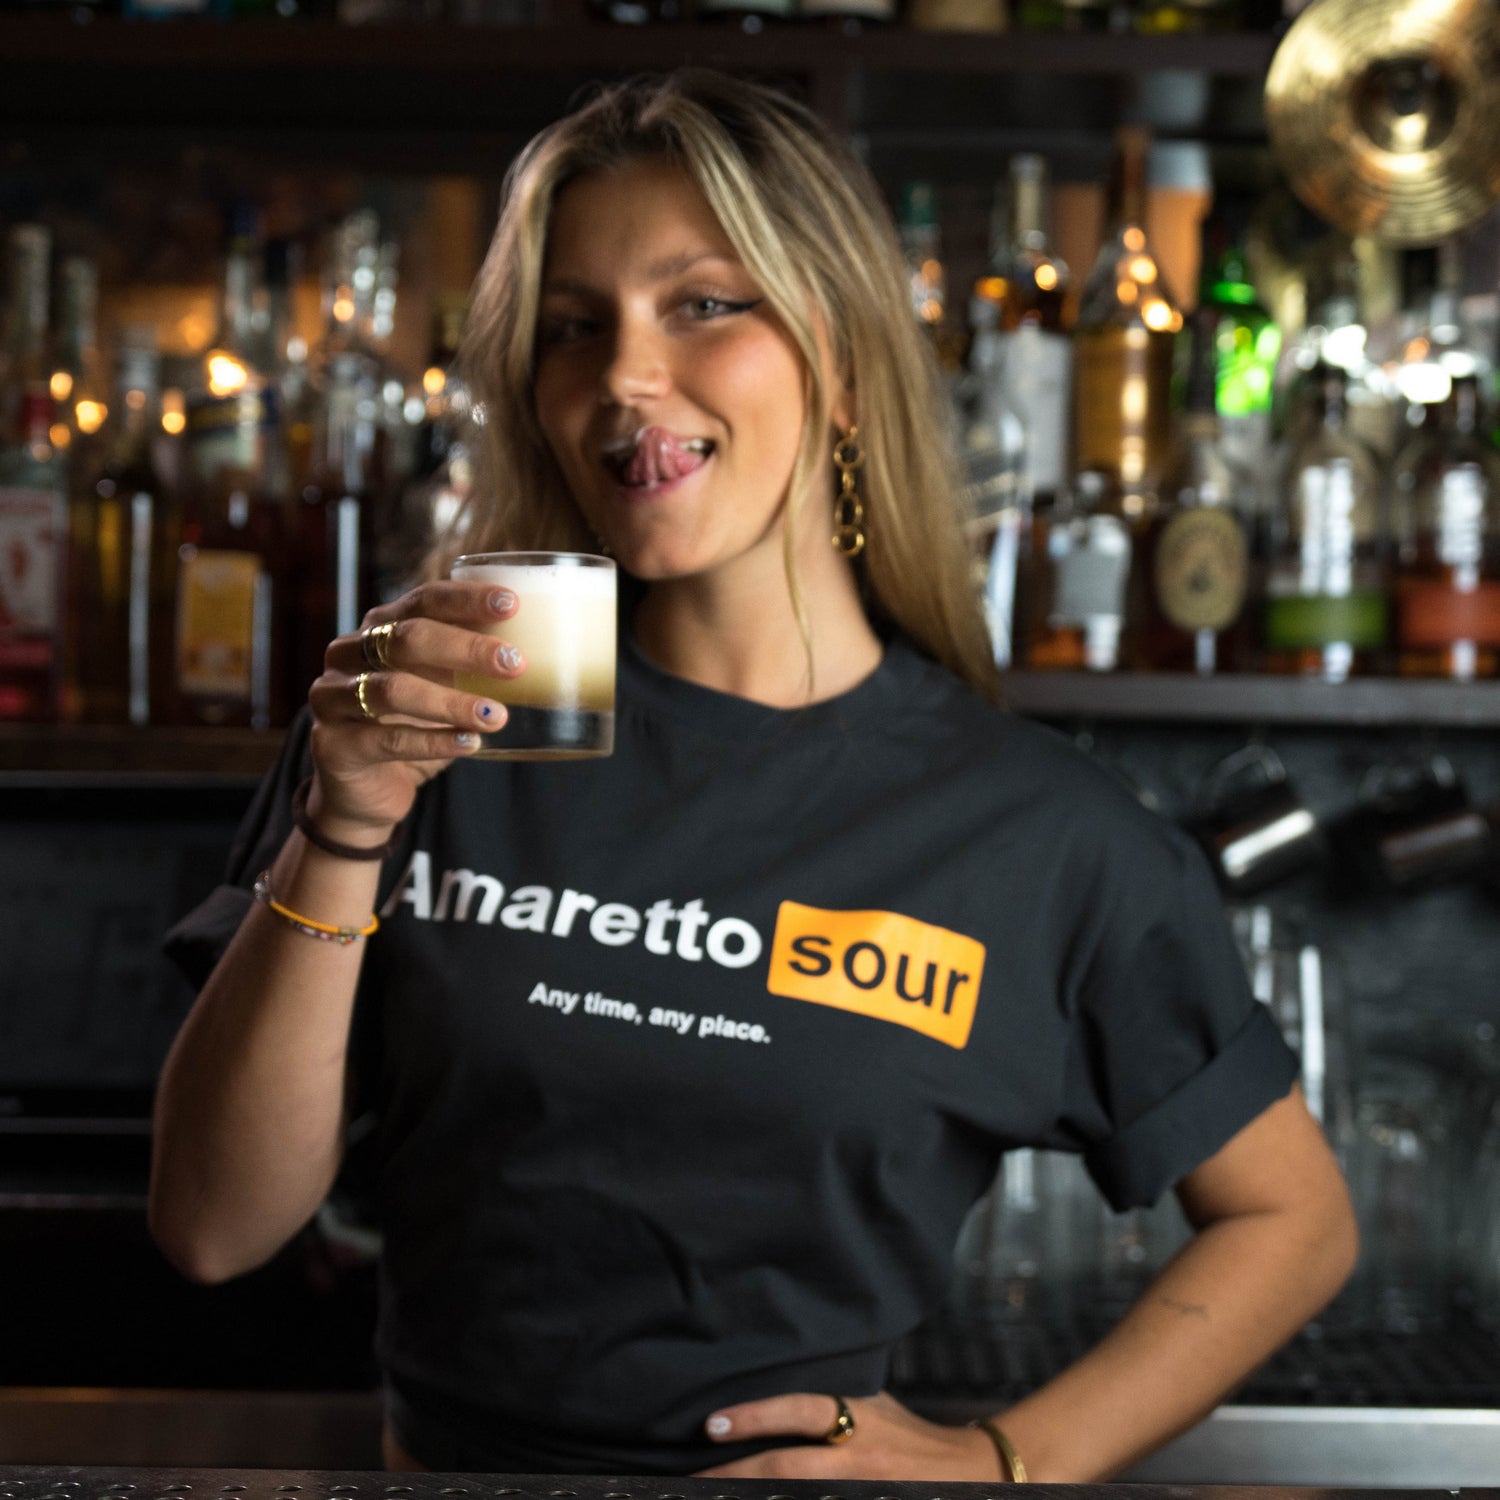 Amaretto Sour T-Shirt by Broken Bartender